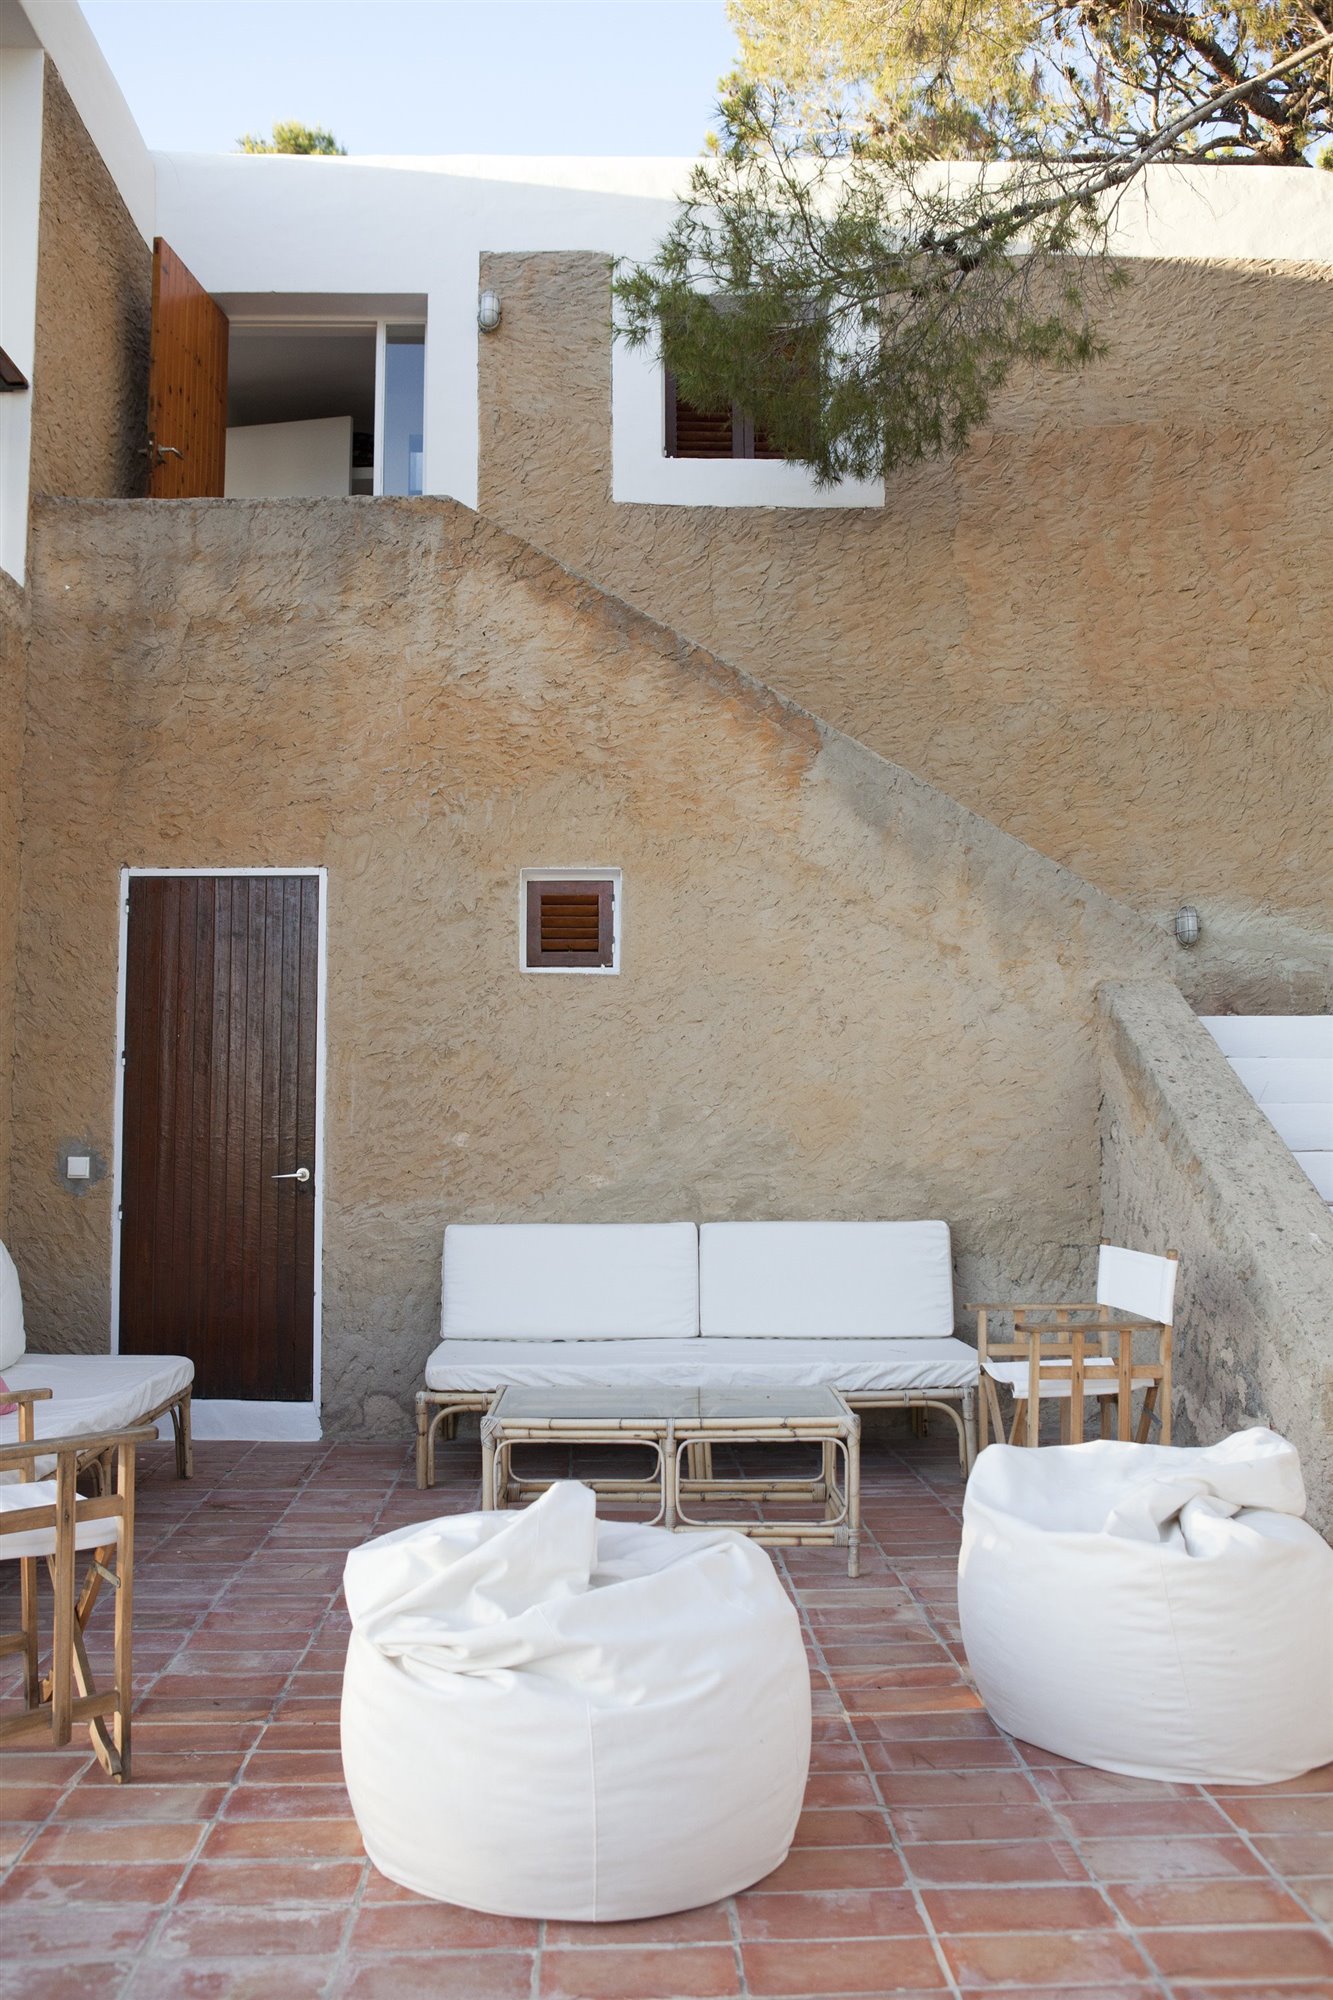 Casa diseñada por Josep Lluis Sert en Ibiza terraza con mobiliario exterior